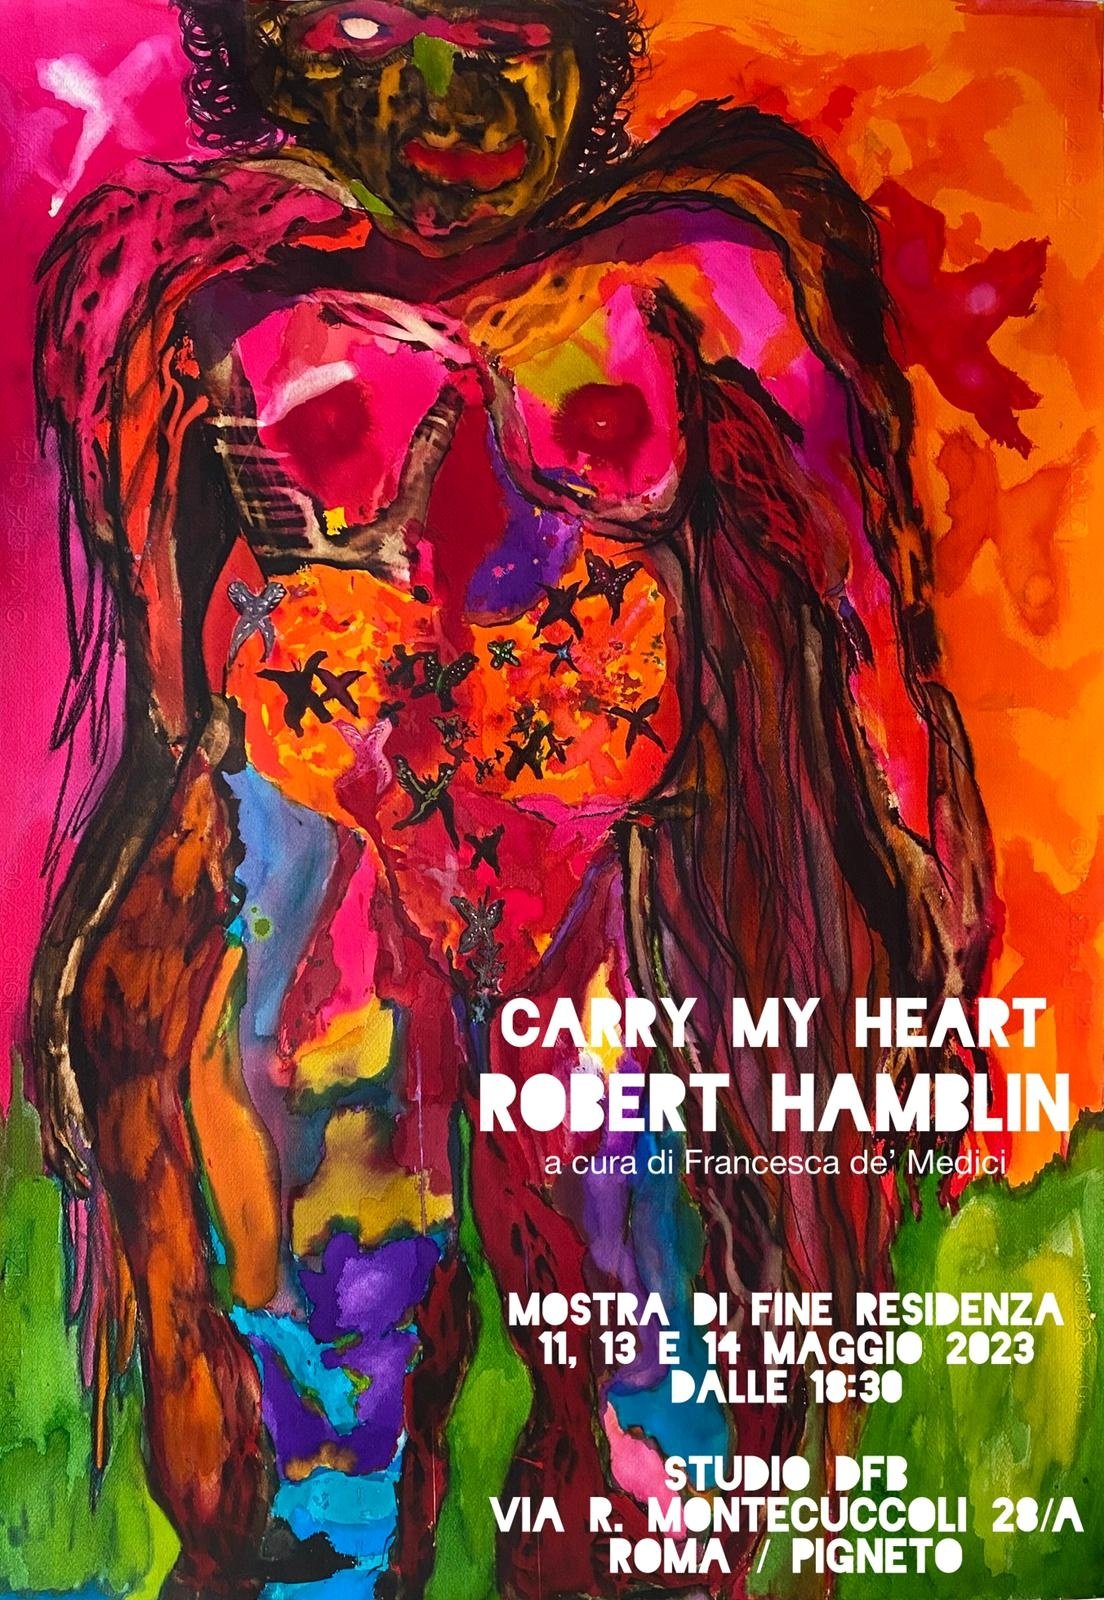 Robert Hamblin - Carry my heart